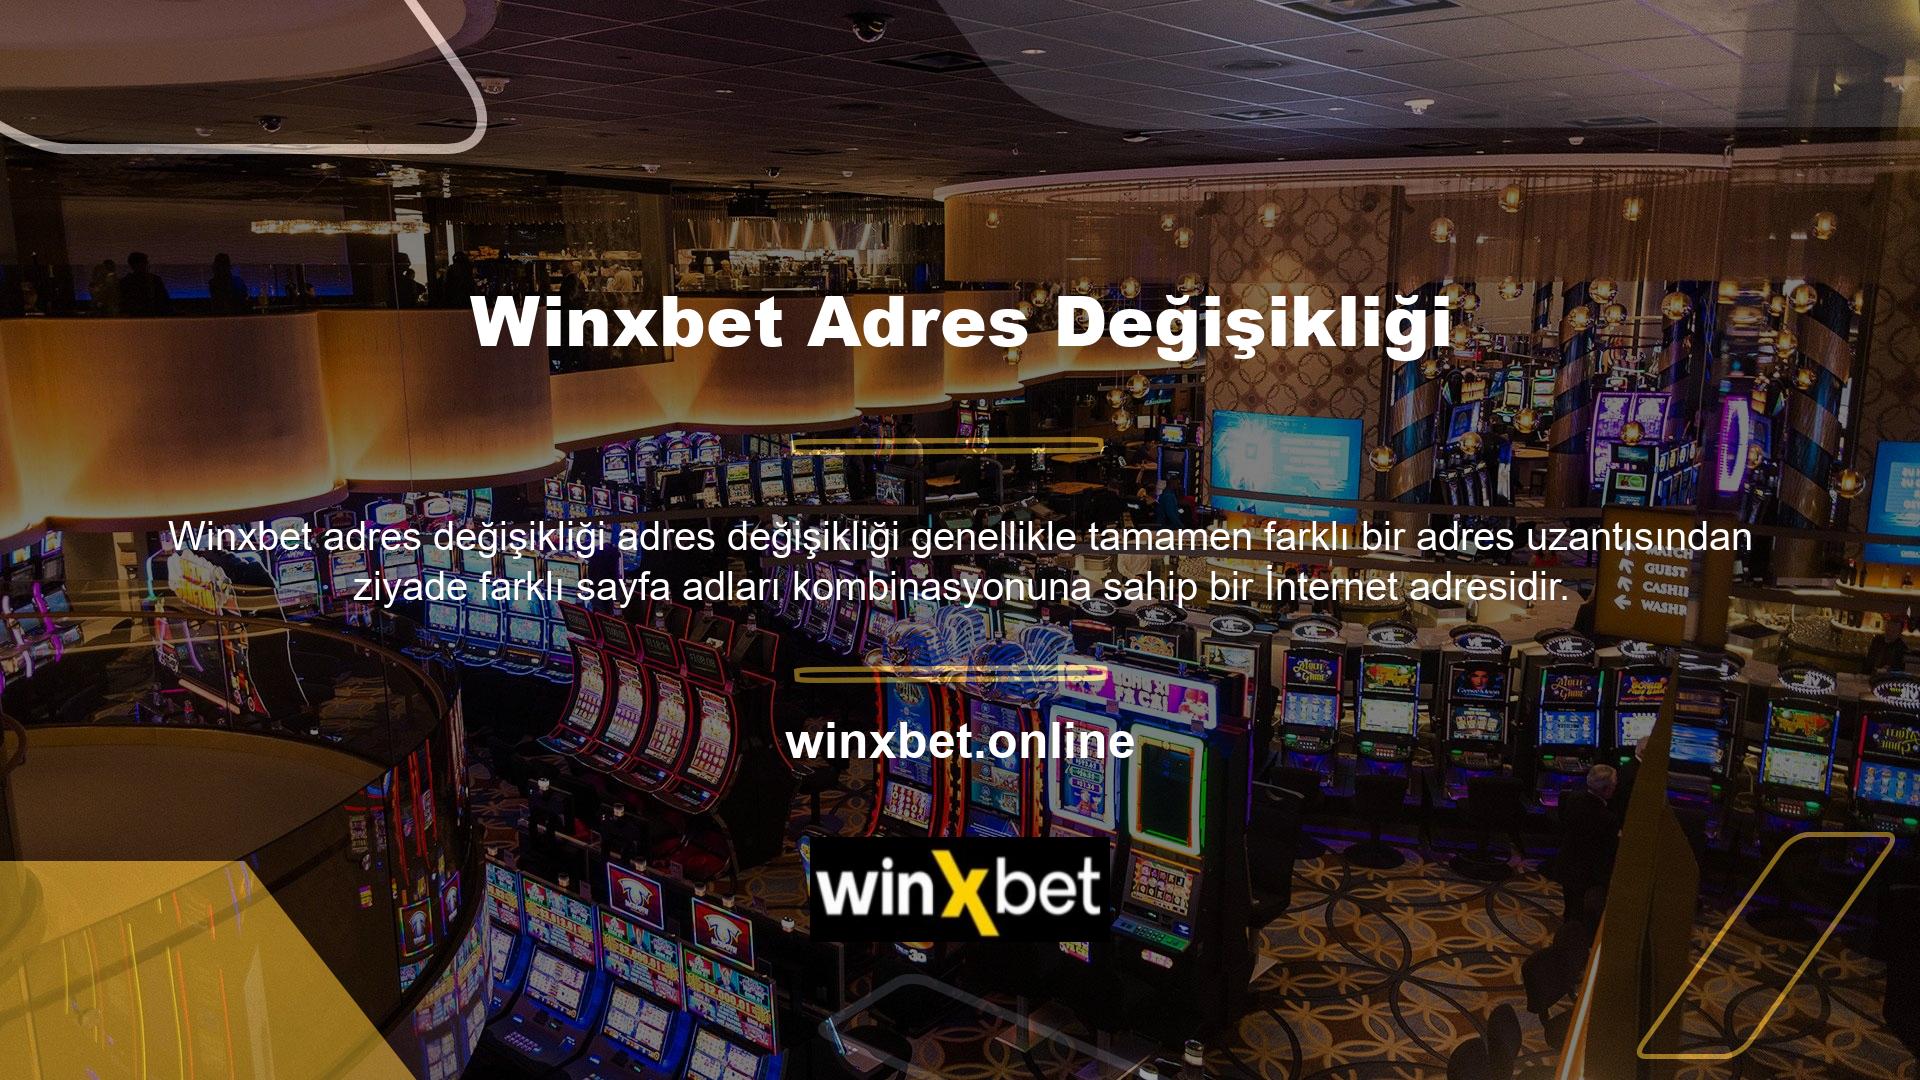 Winxbet online bahis sitesi Türkiye'nin en kapsamlı ve güncel bahis içeriğine sahiptir ancak bu aktivitenin sistematik olarak takip edilmesi gerekmektedir